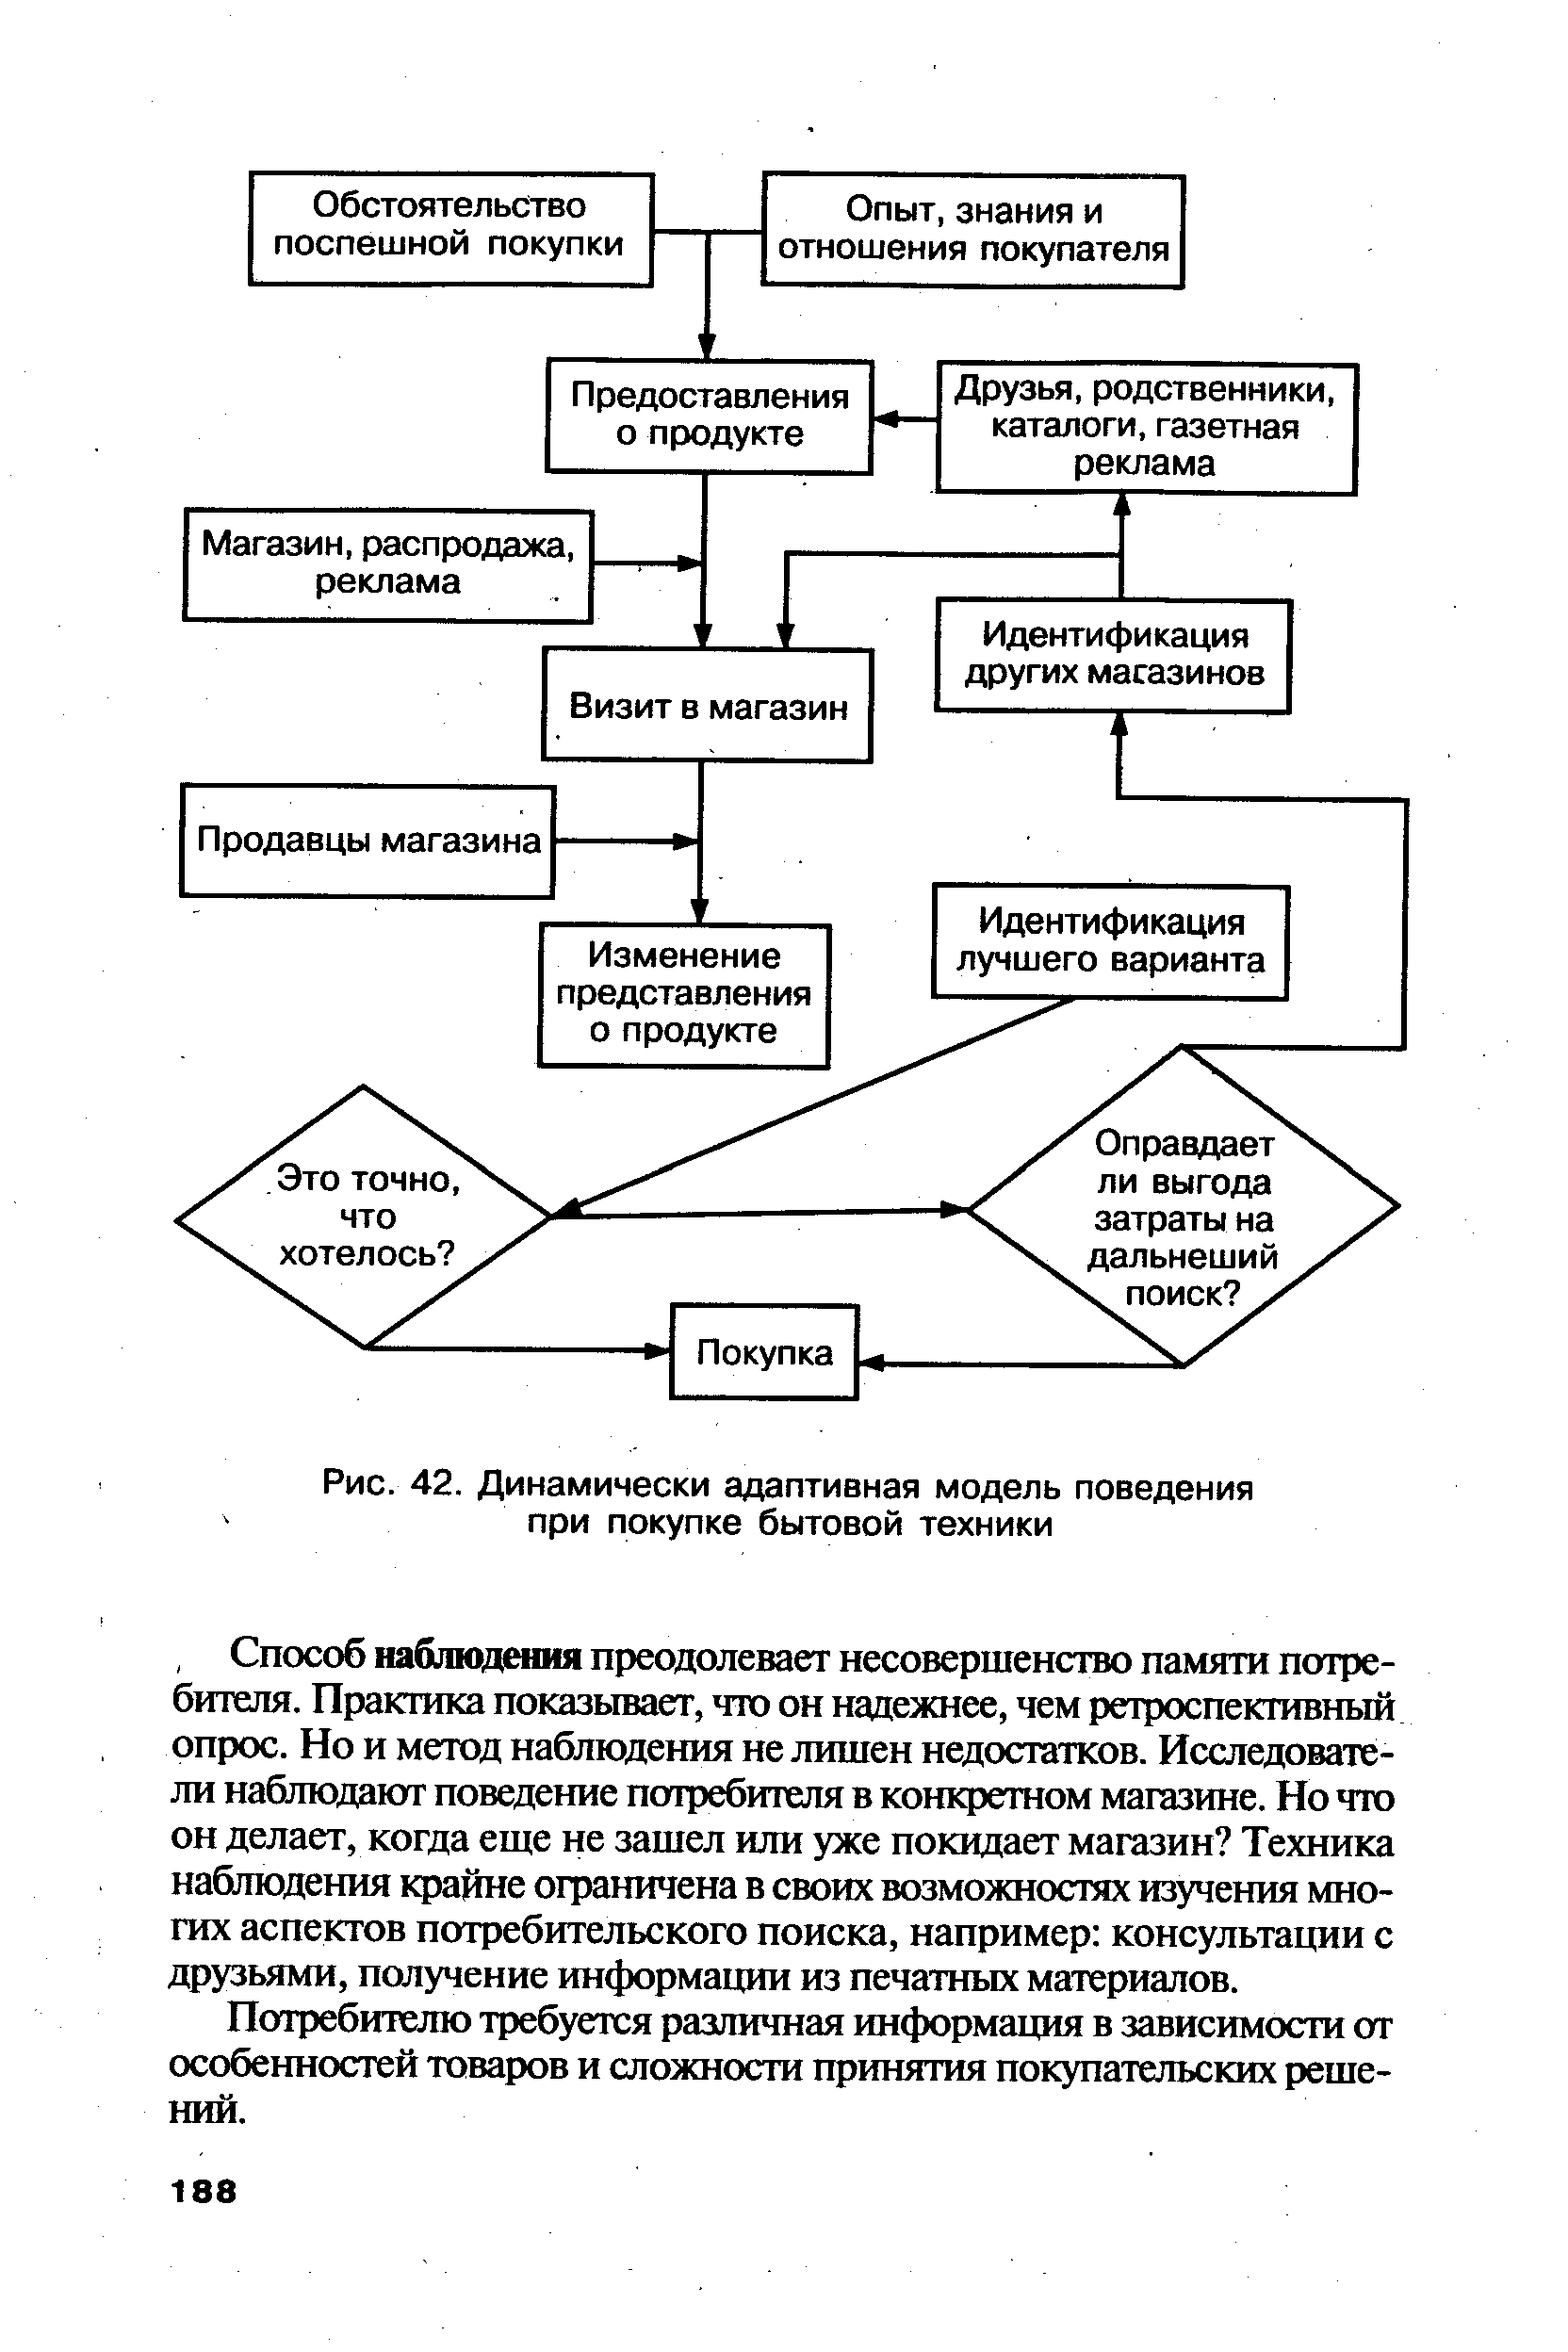 Рис. 42. Динамически адаптивная модель поведения при покупке бытовой техники
